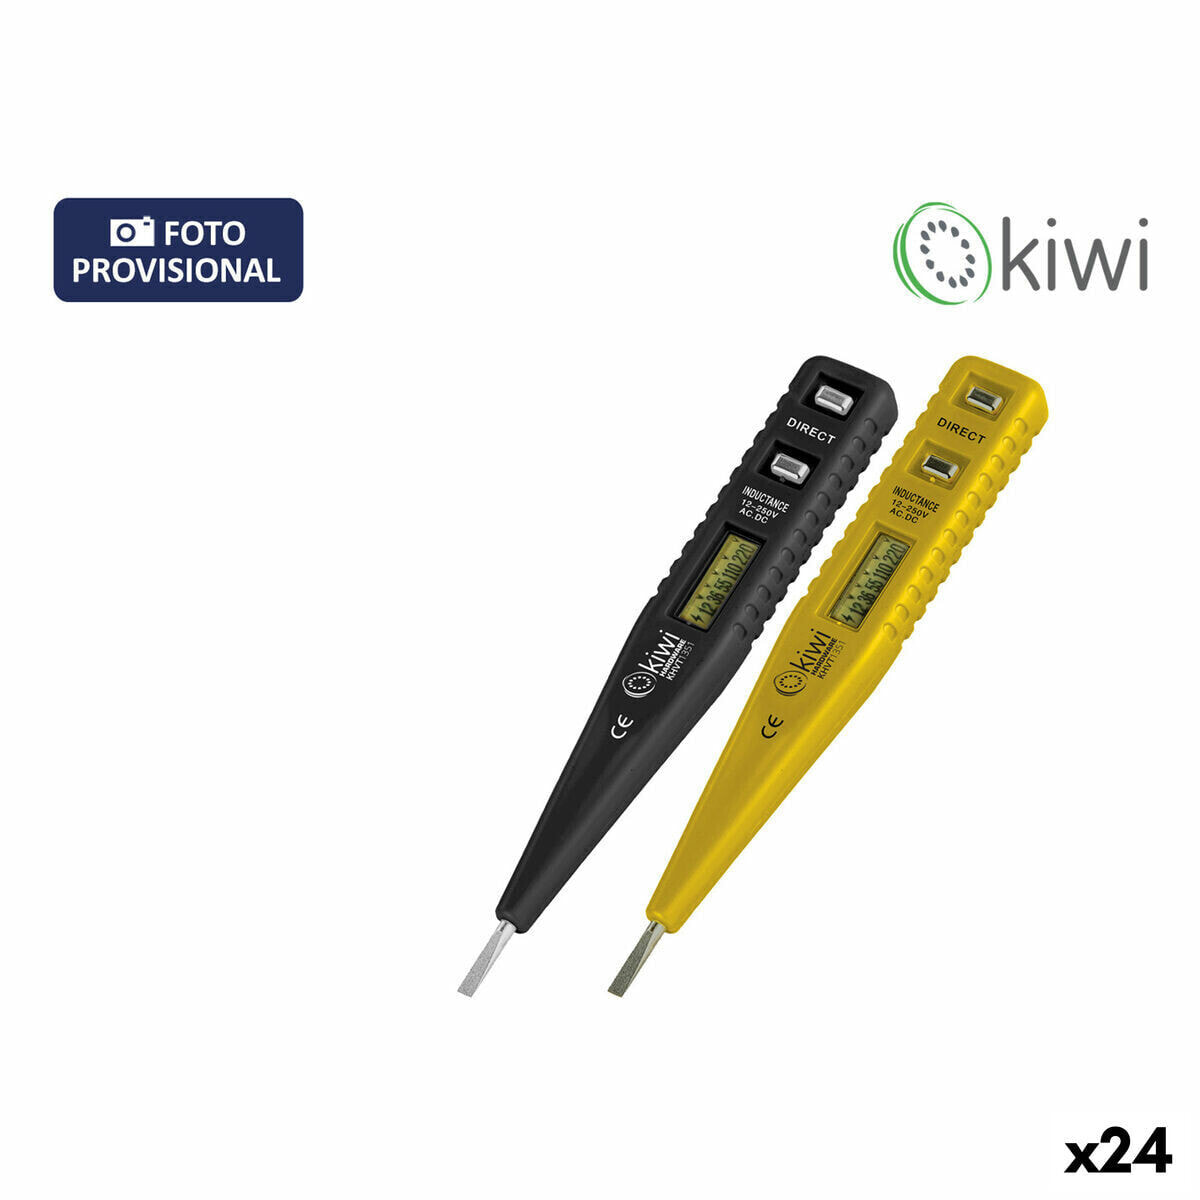 Tool kit Kiwi (24 Units)